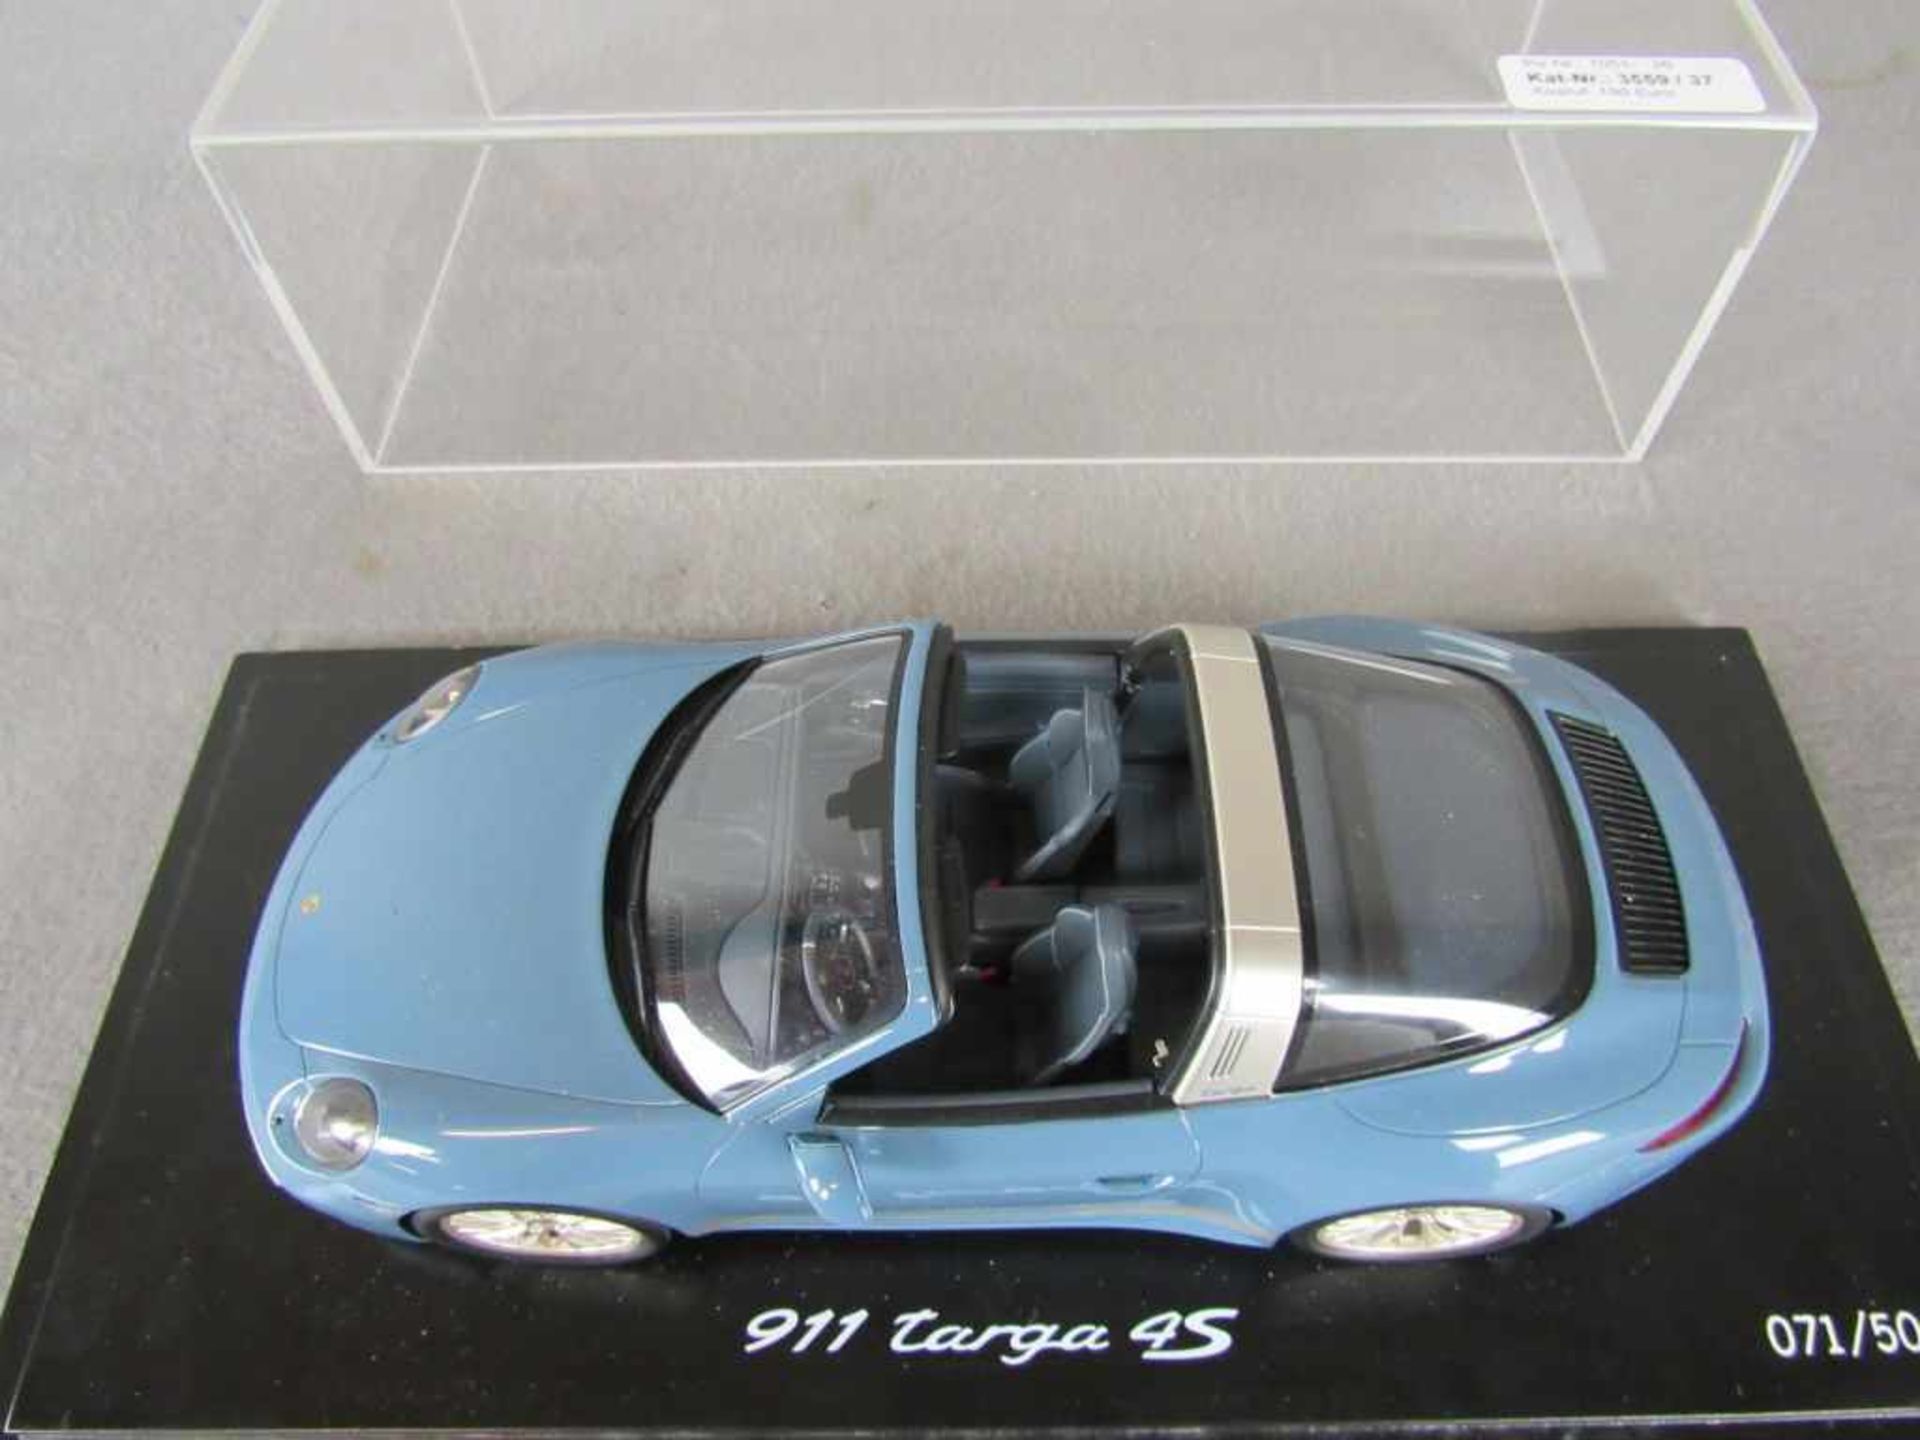 Modellauto Porsche Original Porsche Model im Maßstab 1:18 in original Box unbespieltes - Bild 2 aus 5